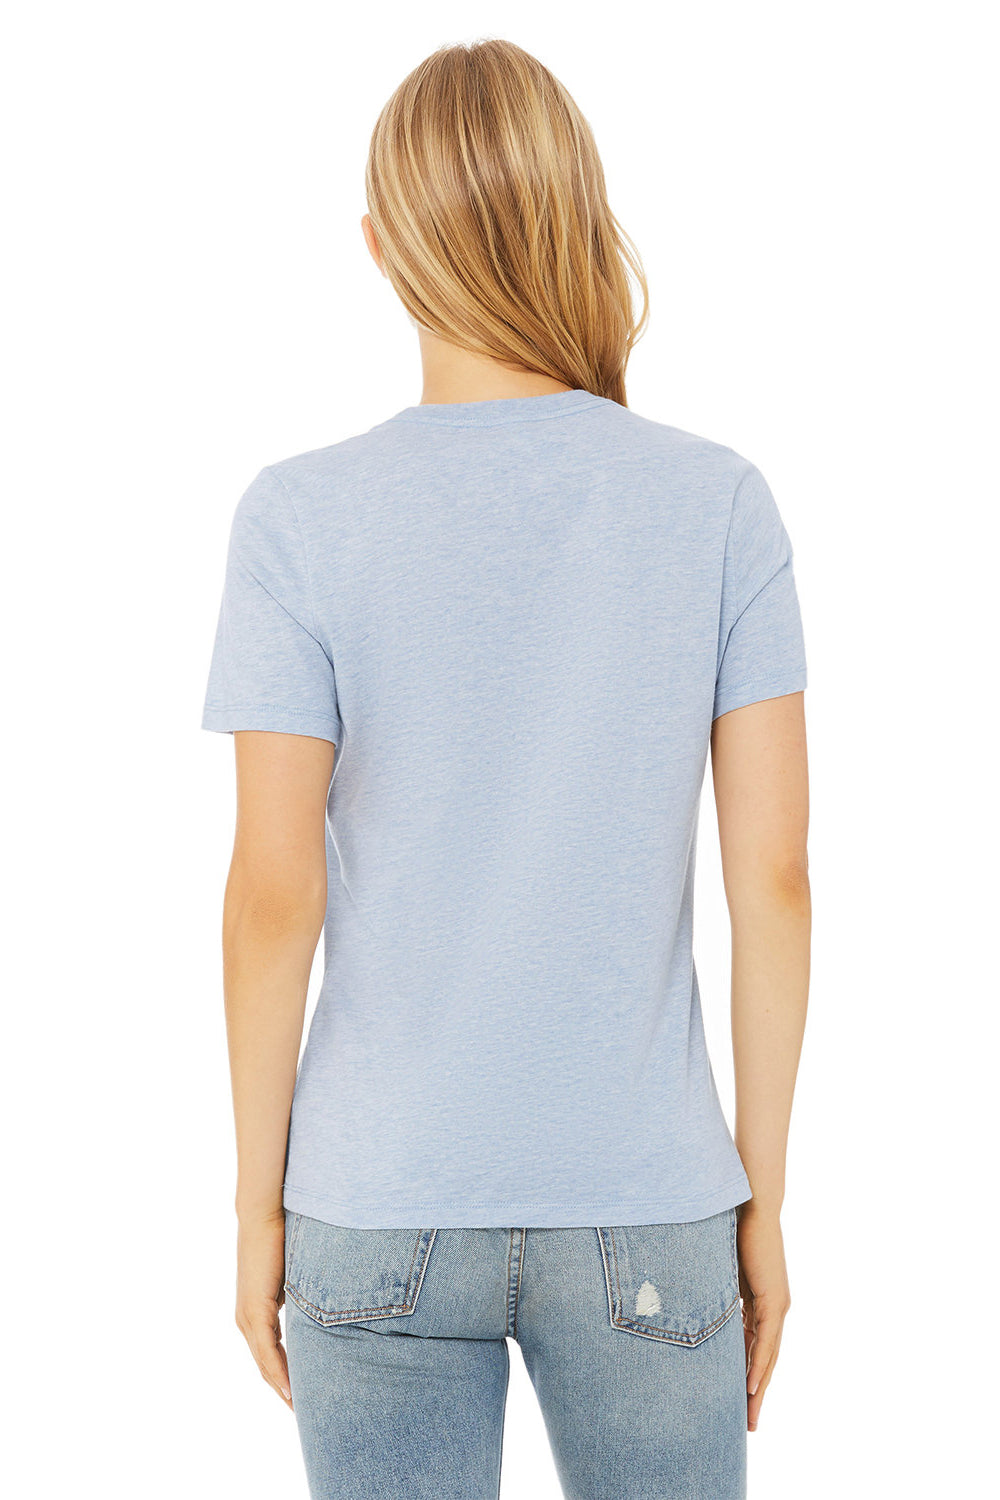 Bella + Canvas BC6400CVC/6400CVC Womens CVC Short Sleeve Crewneck T-Shirt Heather Prism Blue Model Back